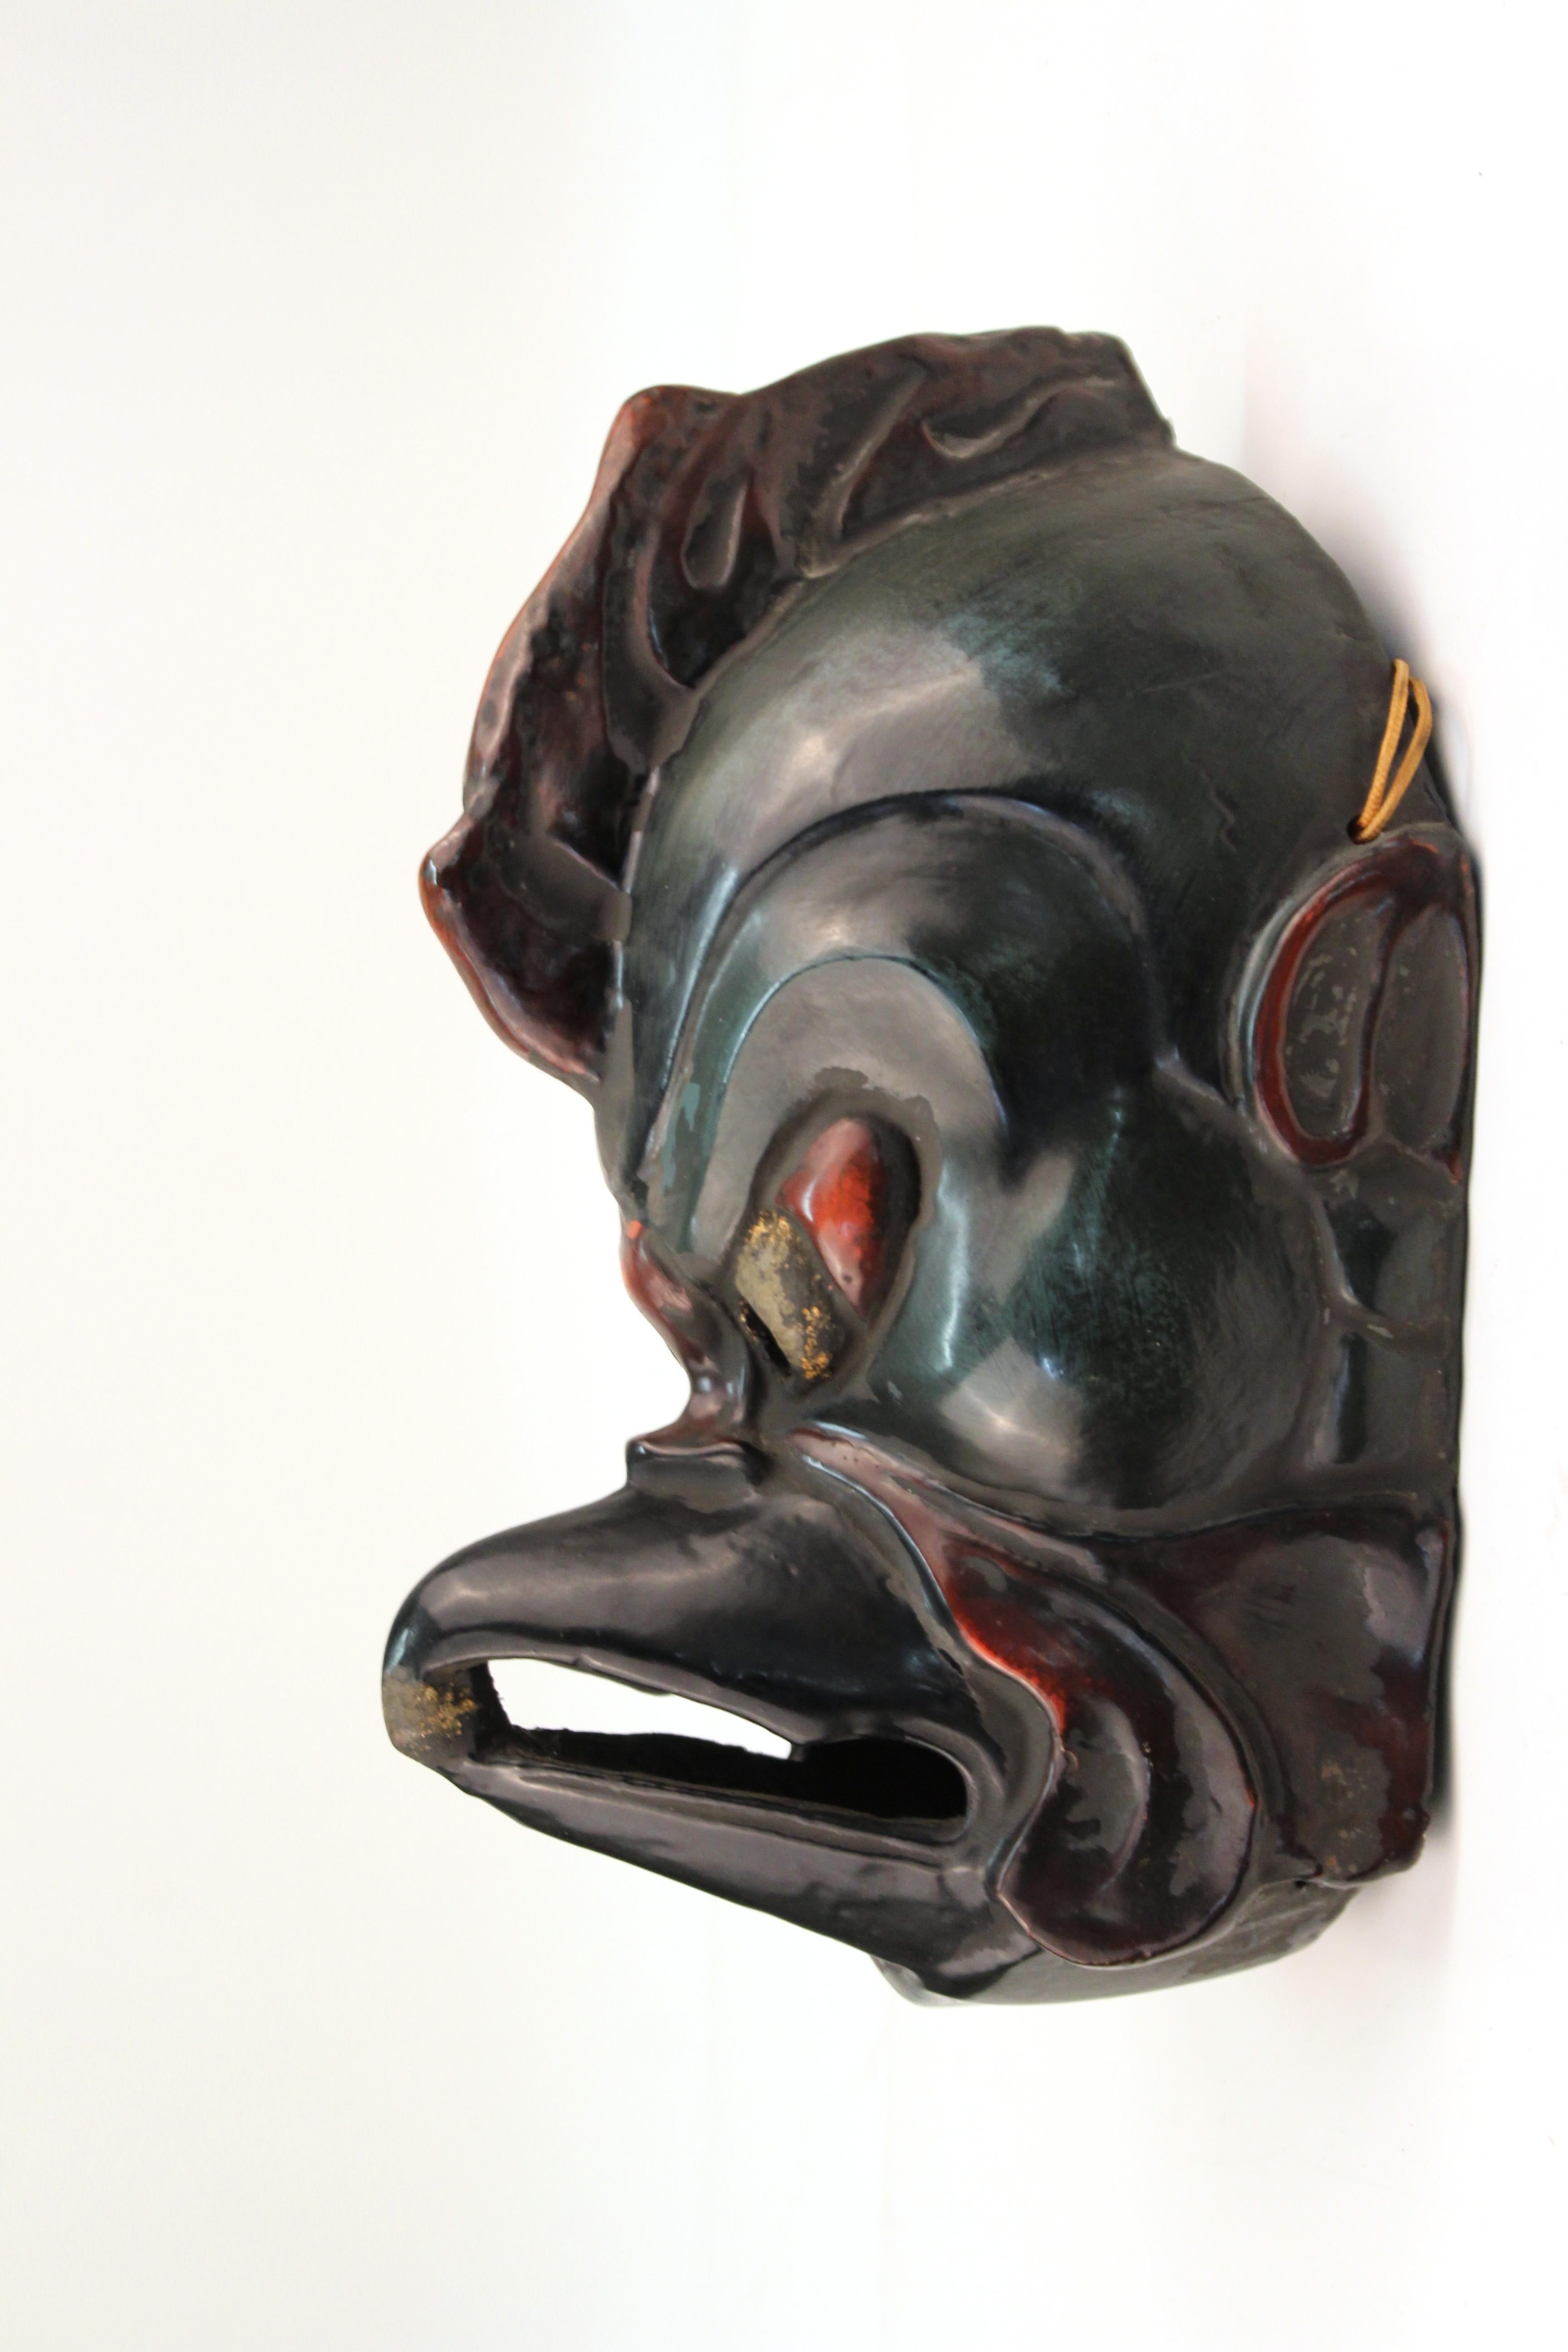 Japanische handgeschnitzte und bemalte Holzmaske des Tengu, des legendären japanischen Volksreligionswesens. Diese Maske, die traditionell als Mischwesen aus Mensch und Raubvogel dargestellt wird, ist in hervorragendem Zustand und stammt aus der